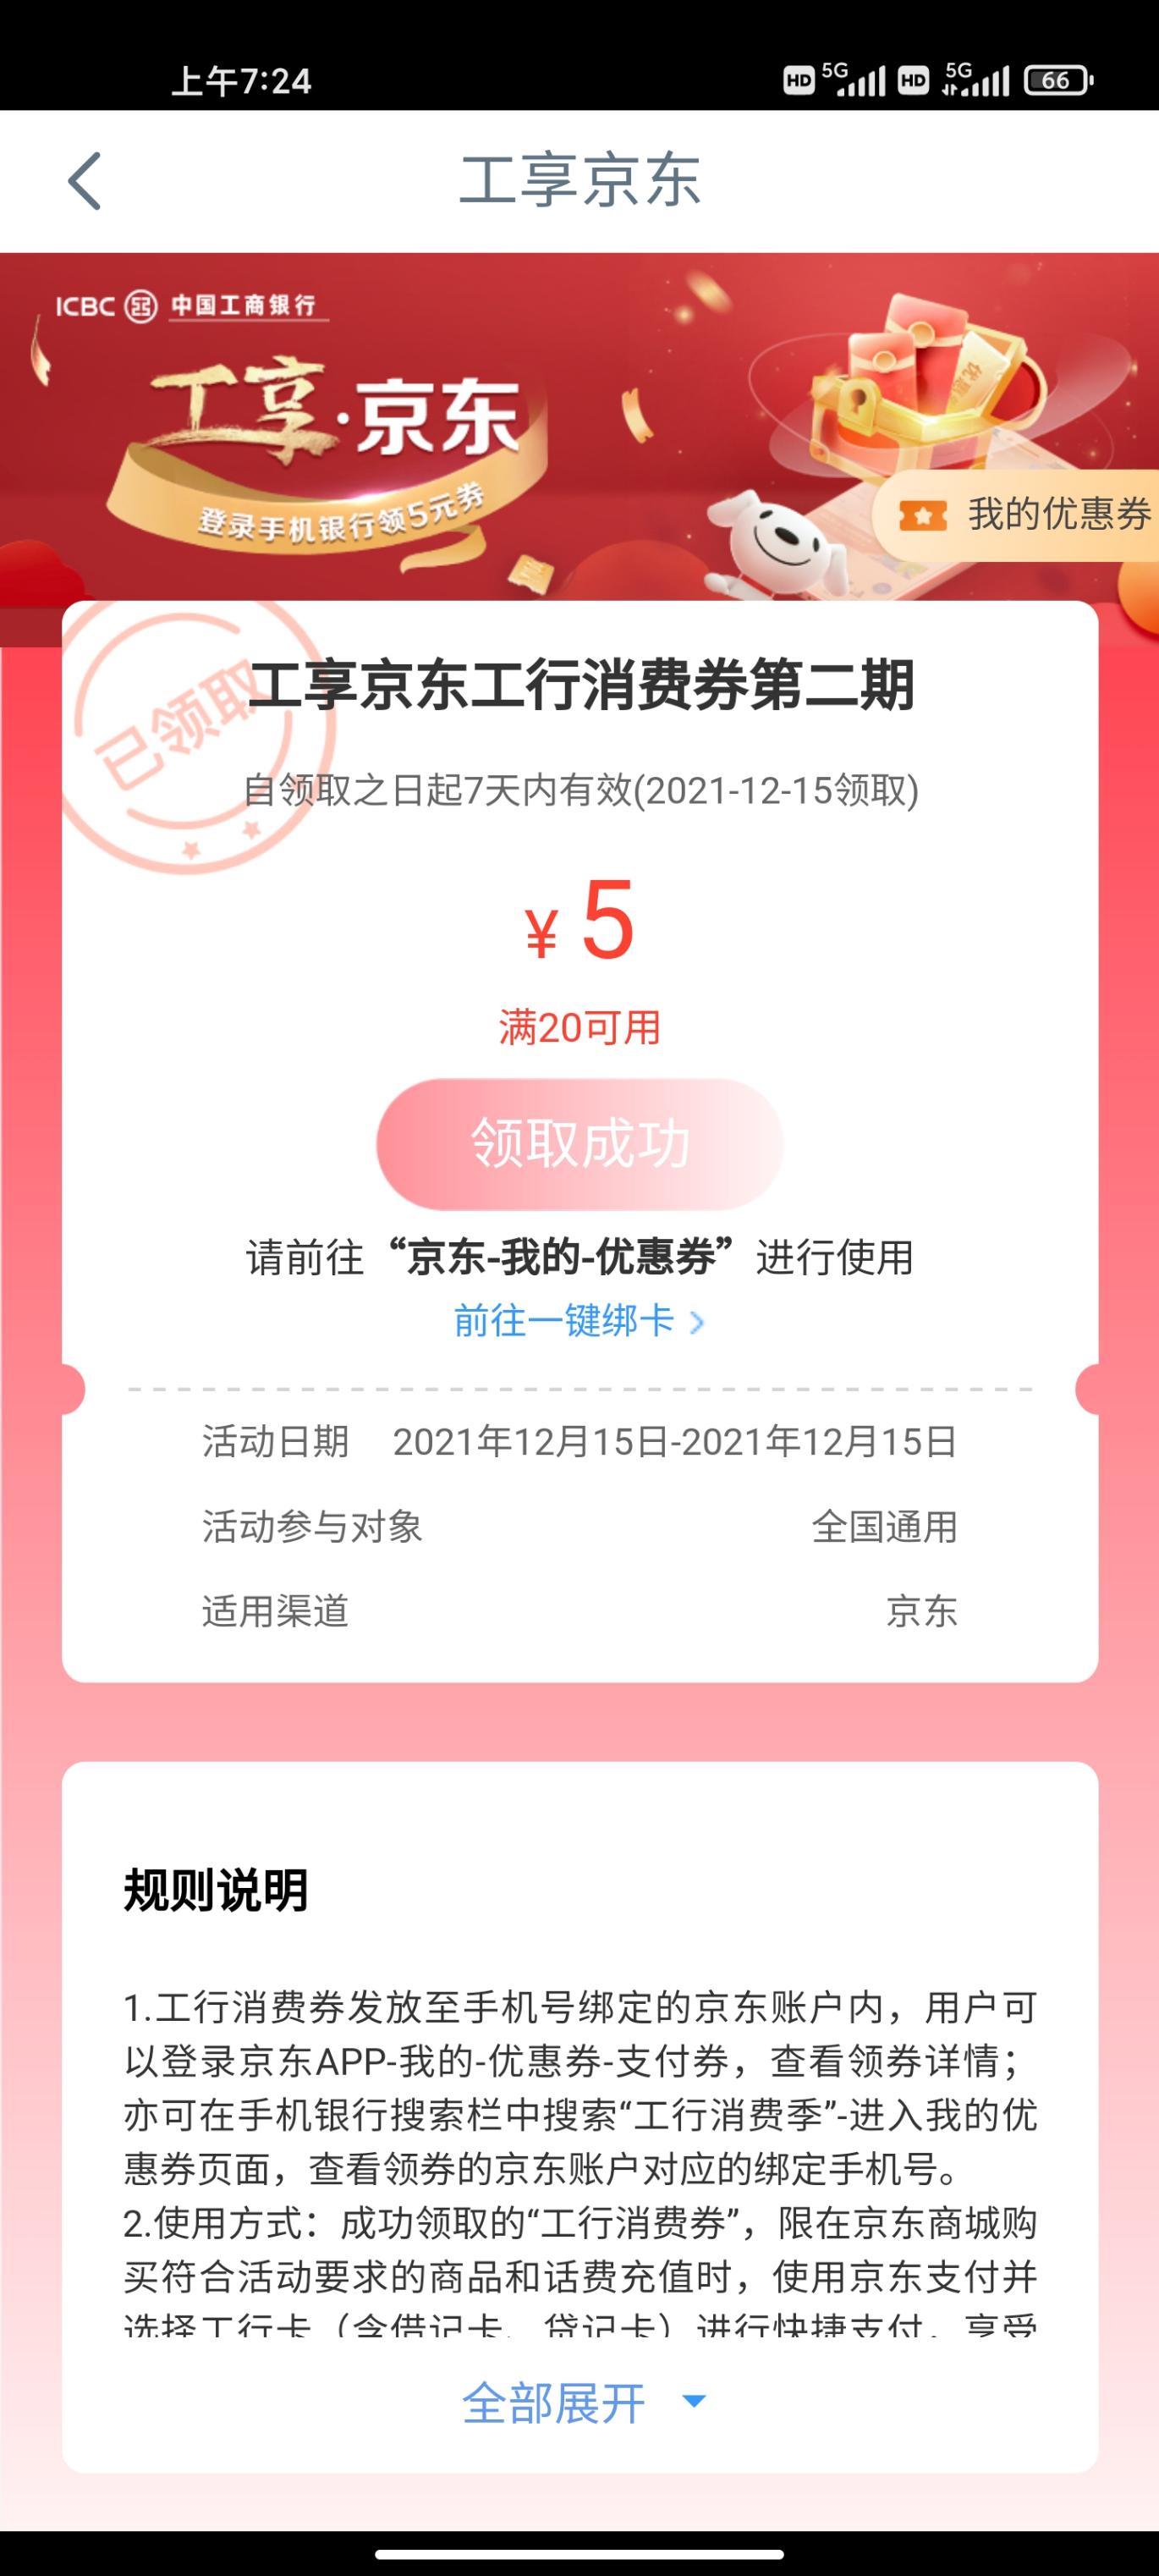 工行京东-5第二期-登录app领-惠小助(52huixz.com)